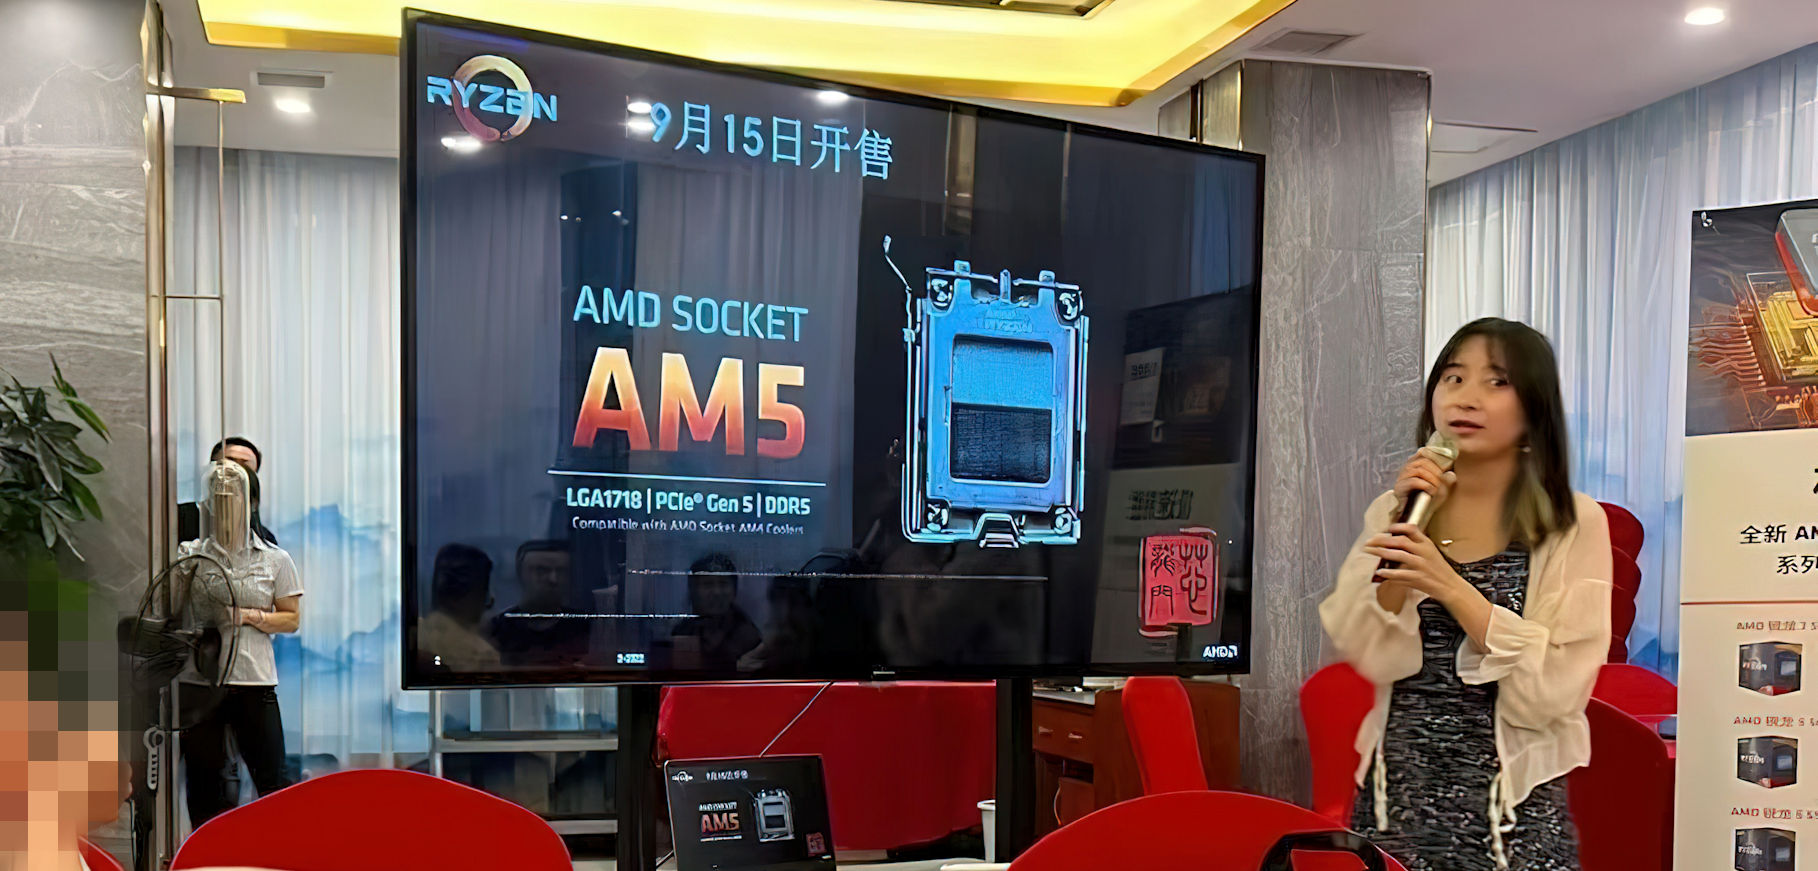 اسلاید تبلیغاتی AMD برای معرفی پردازنده های جدید رایزن